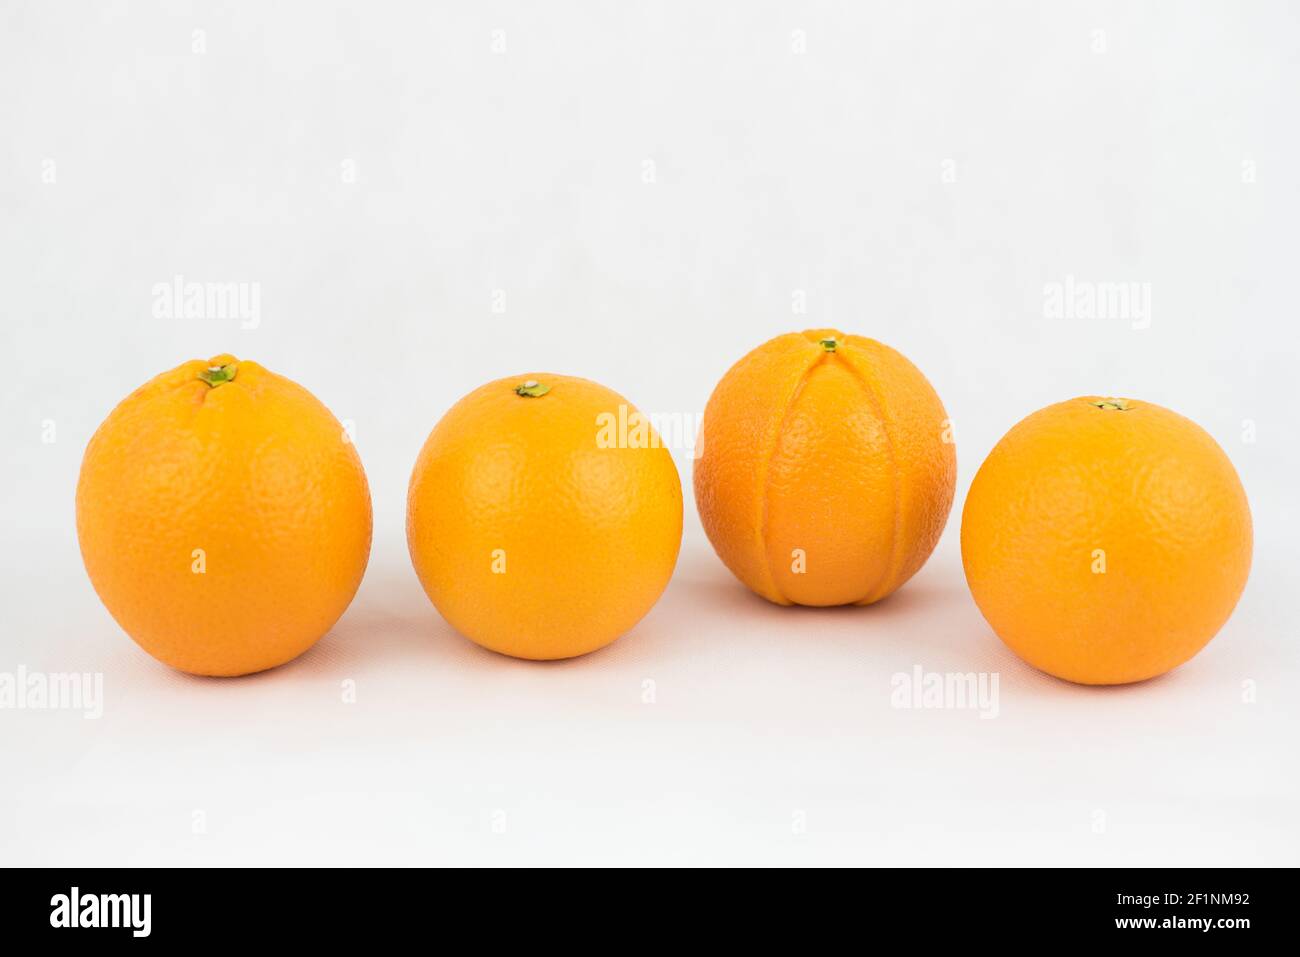 Cuatro naranjas, una de las cuales es defectuosa (ilustración de singularidad, desigualdad) Foto de stock